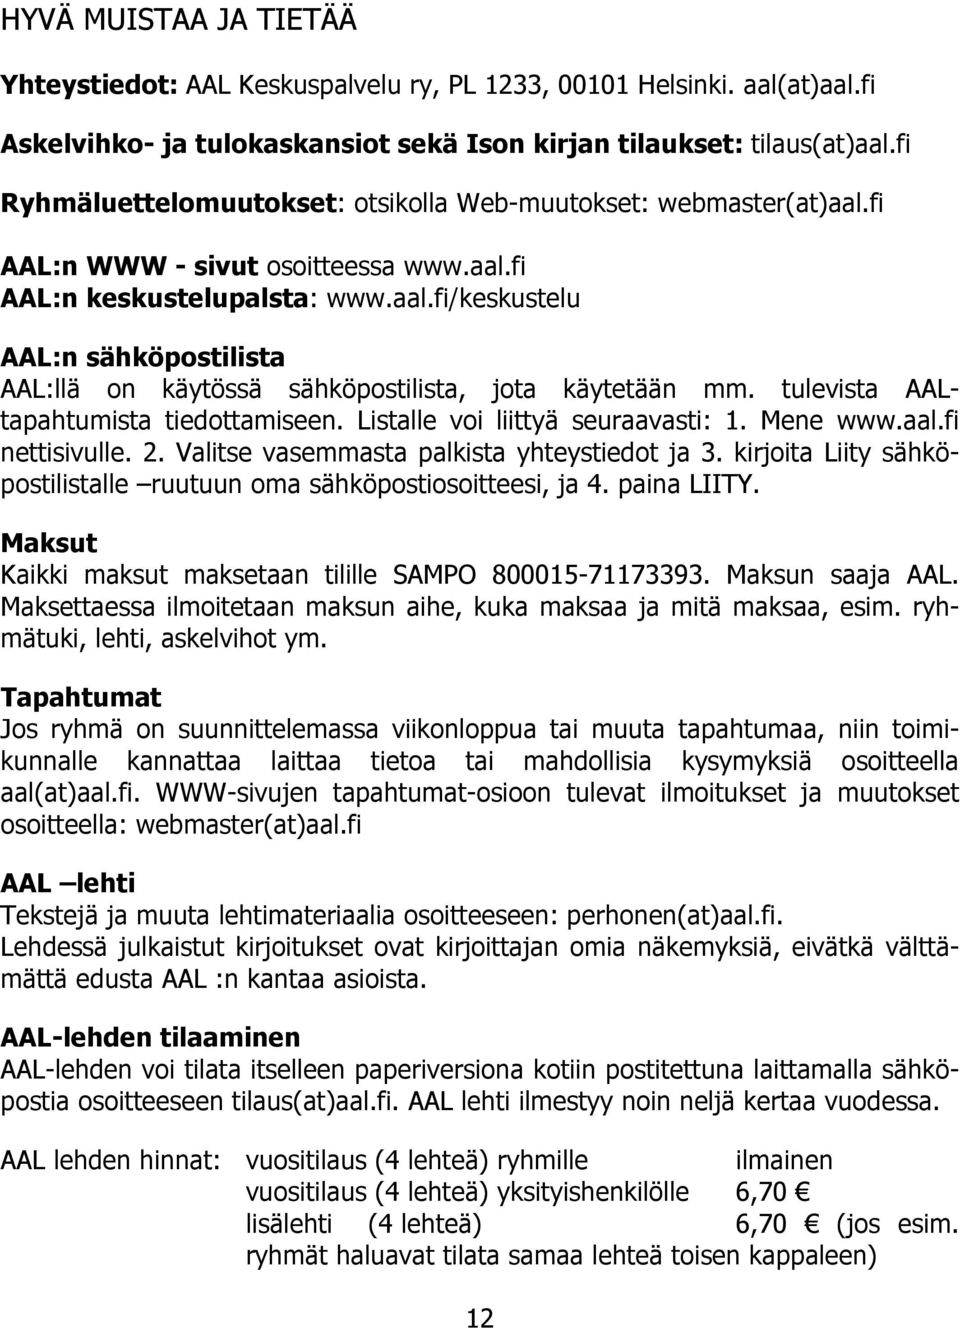 tulevista AALtapahtumista tiedottamiseen. Listalle voi liittyä seuraavasti: 1. Mene www.aal.fi nettisivulle. 2. Valitse vasemmasta palkista yhteystiedot ja 3.